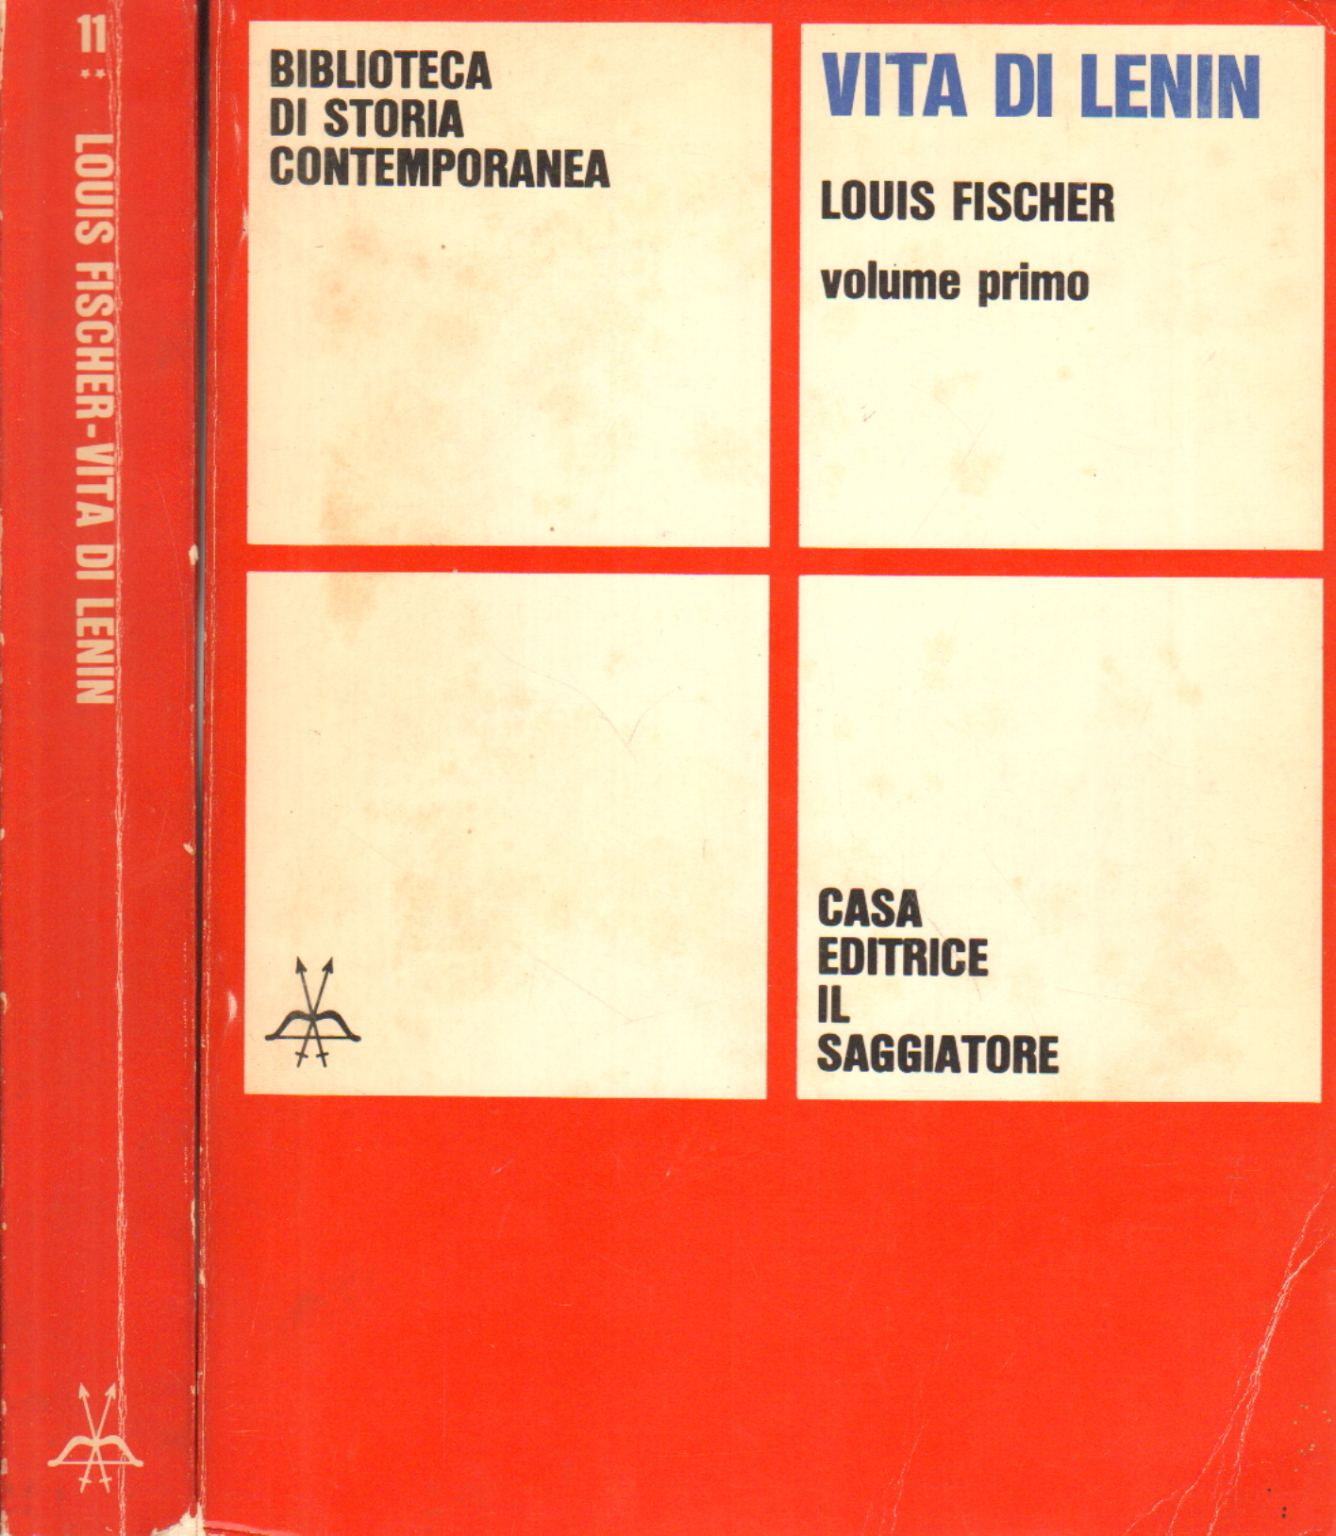 Vida de Lenin (2 volúmenes), Louis Fischer